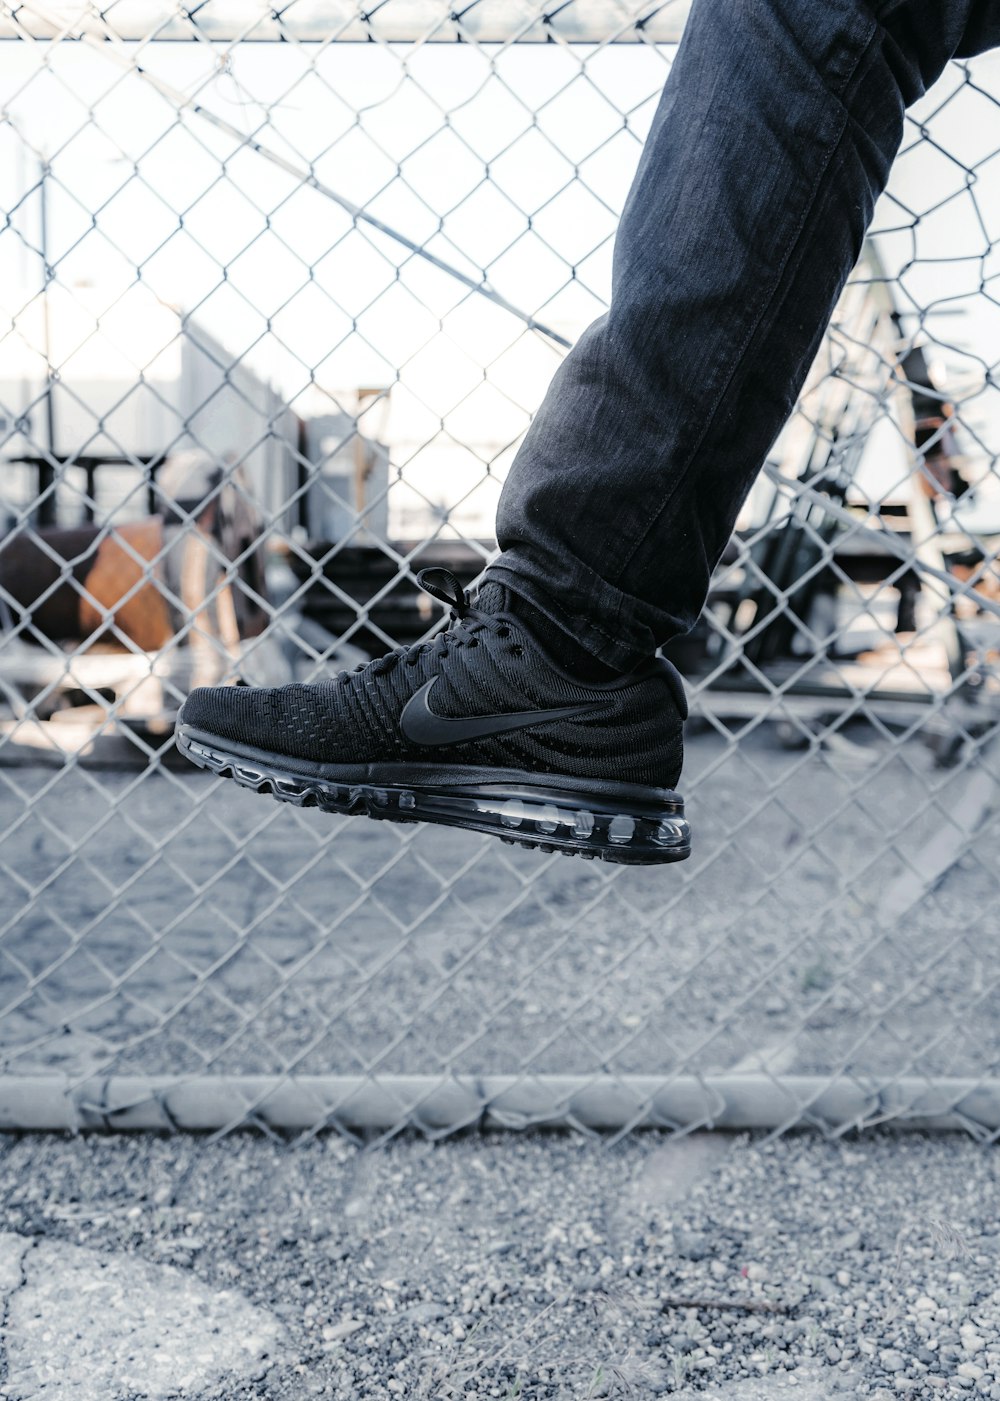 person wearing black Nike running shoe photo – Free United states Image on  Unsplash